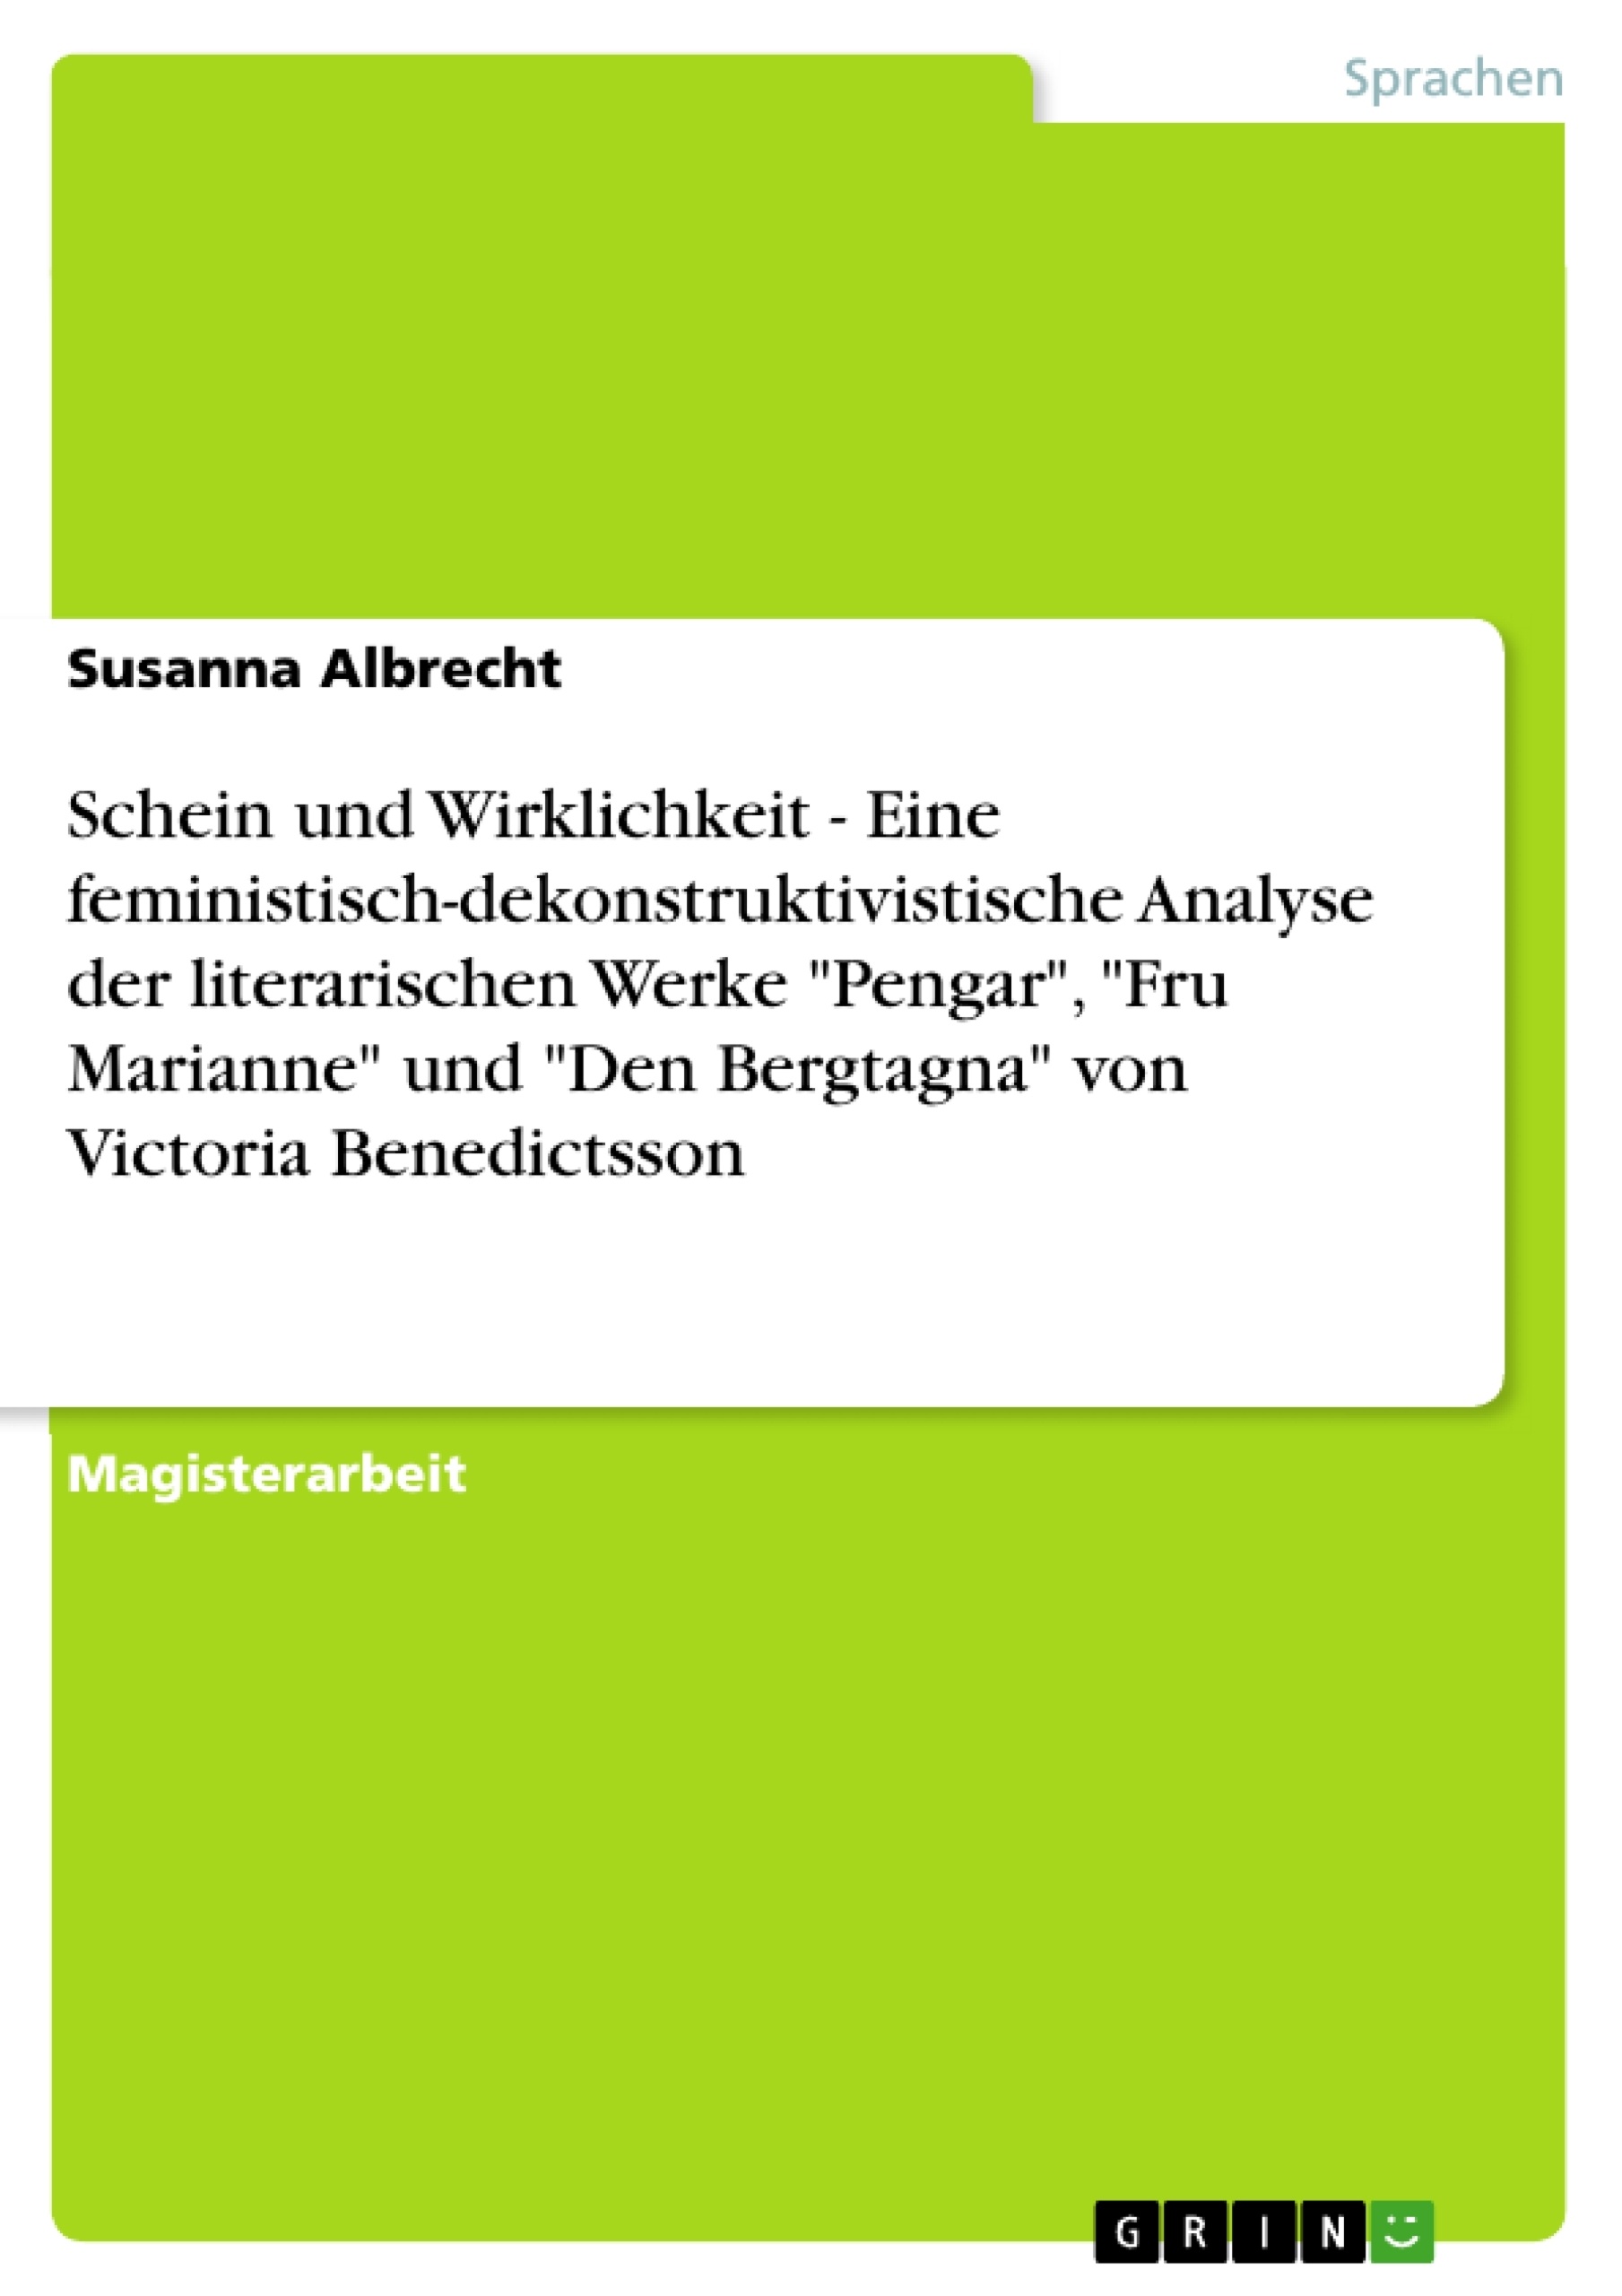 Title: Schein und Wirklichkeit  -  Eine feministisch-dekonstruktivistische Analyse der literarischen Werke "Pengar", "Fru Marianne" und "Den Bergtagna" von Victoria Benedictsson 